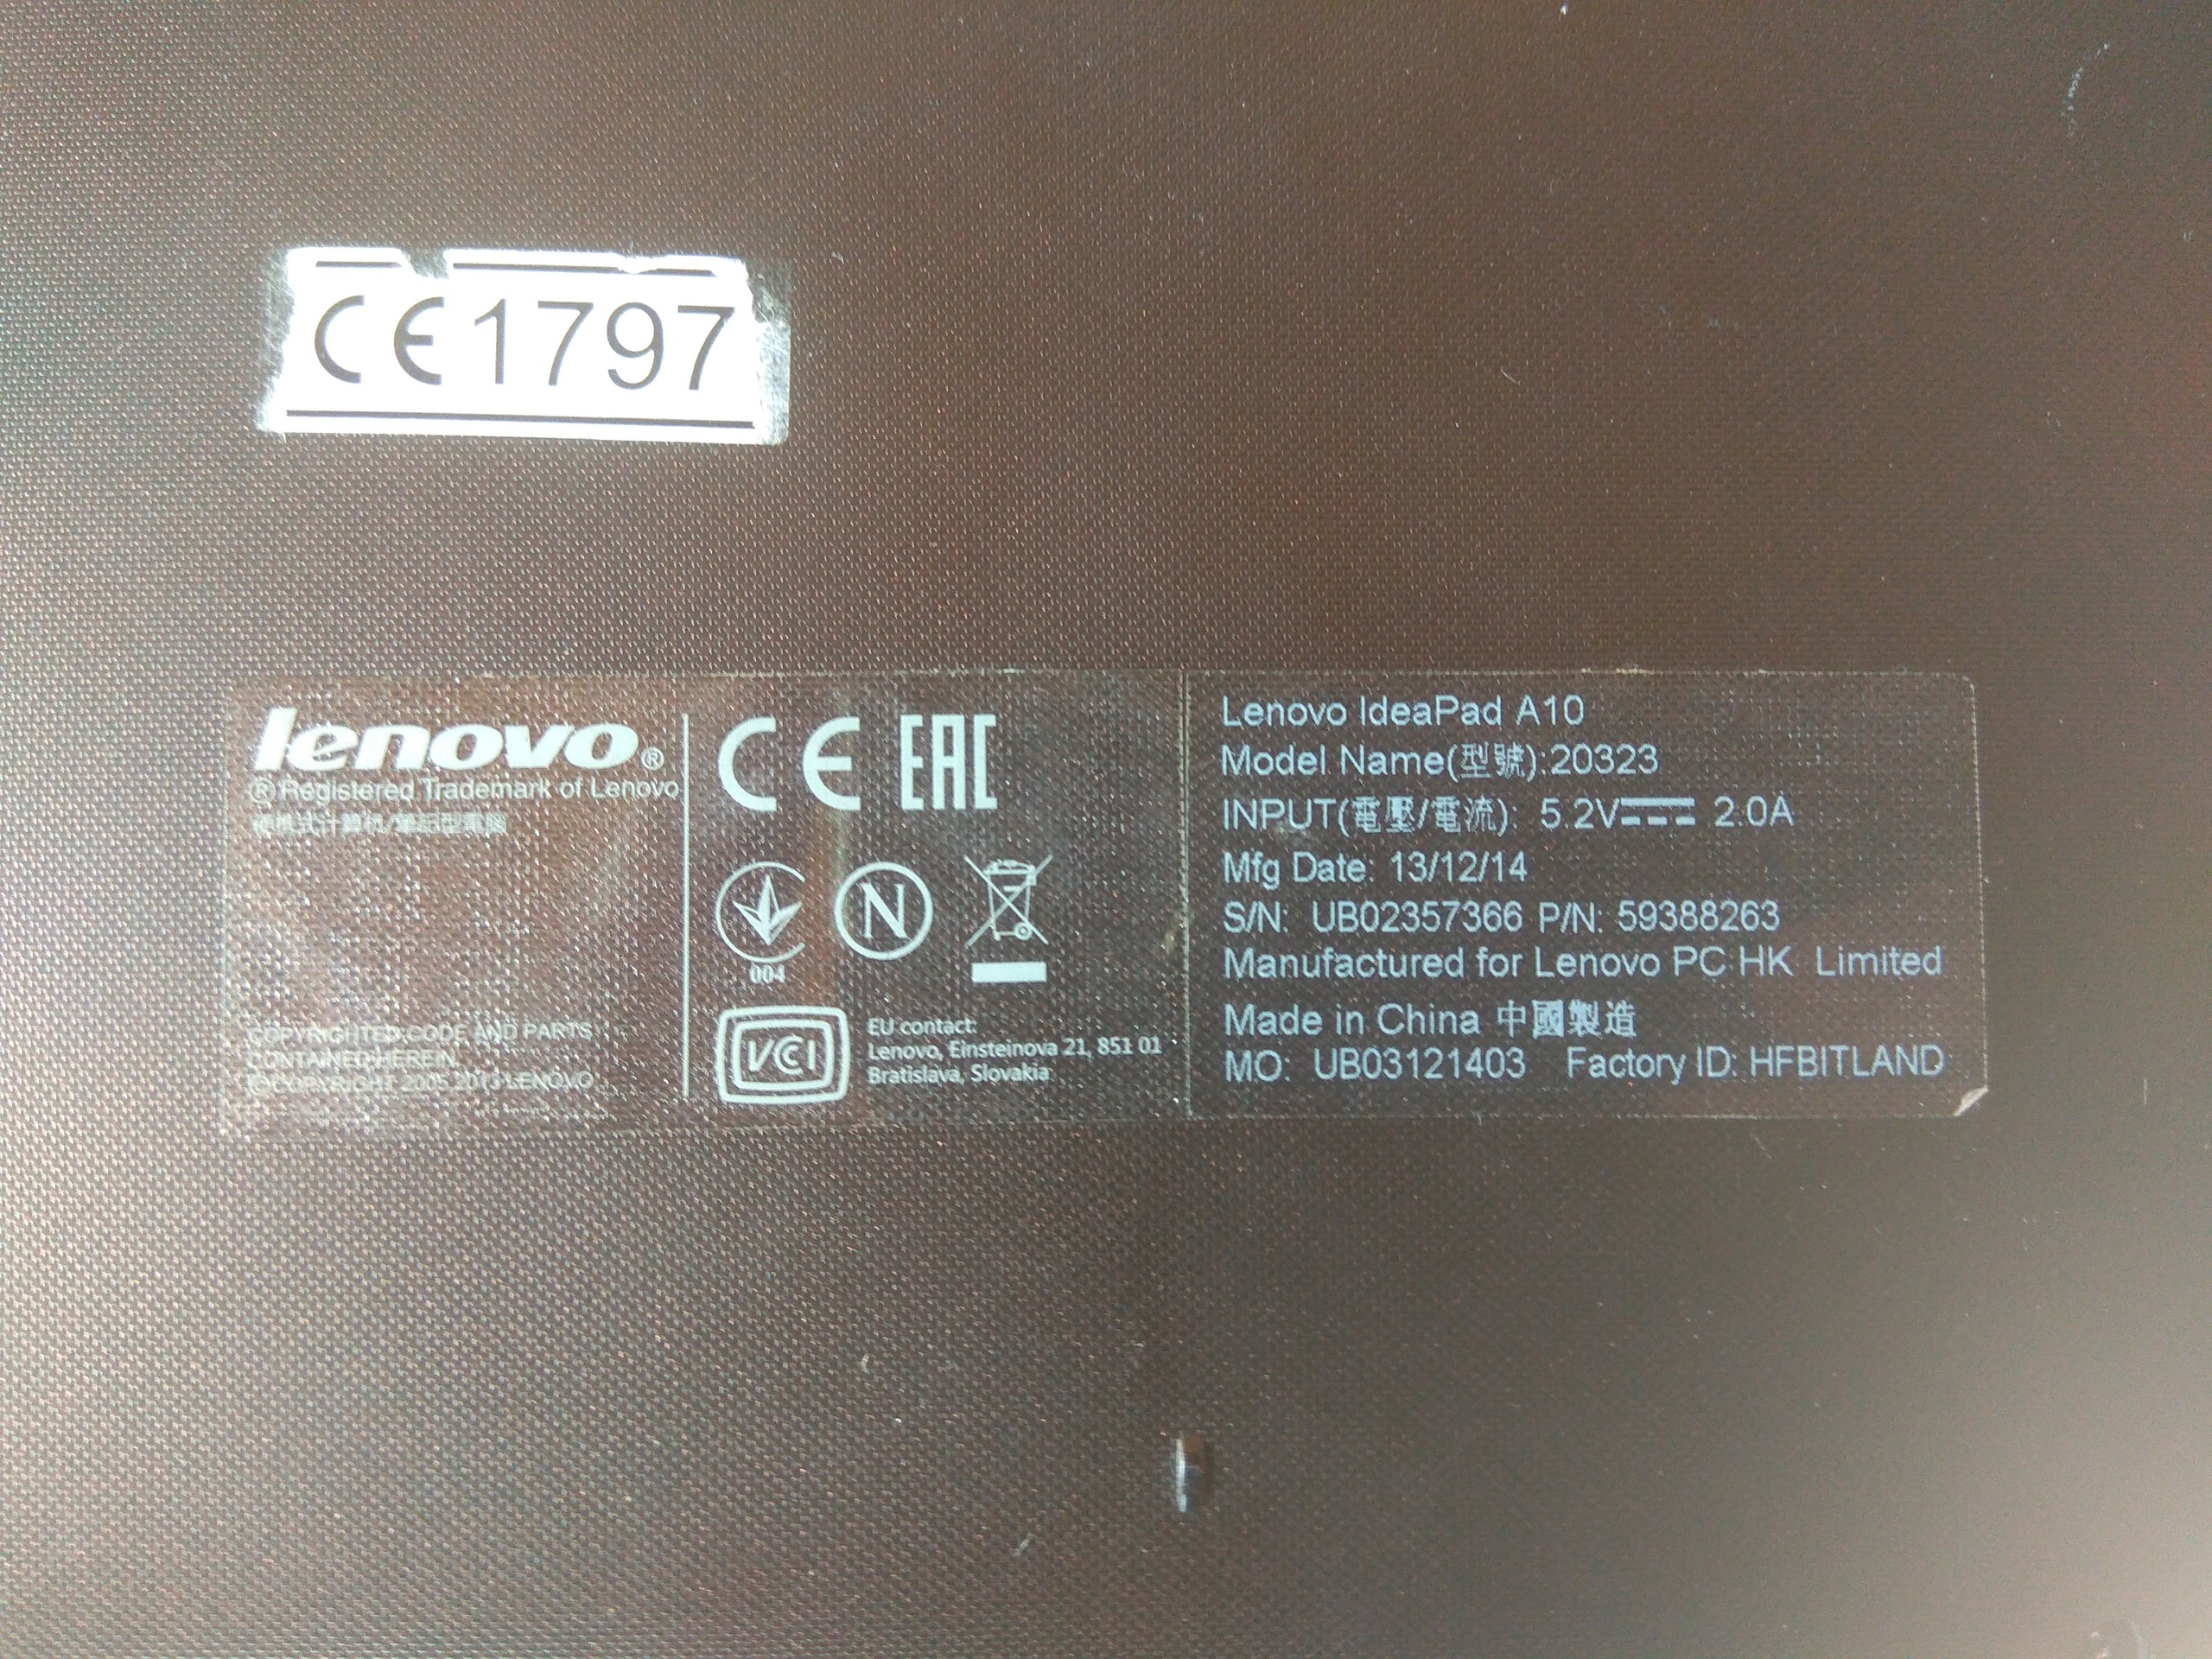 Lenovo IdeaPad a10 (açıklamayı okuyunuz)